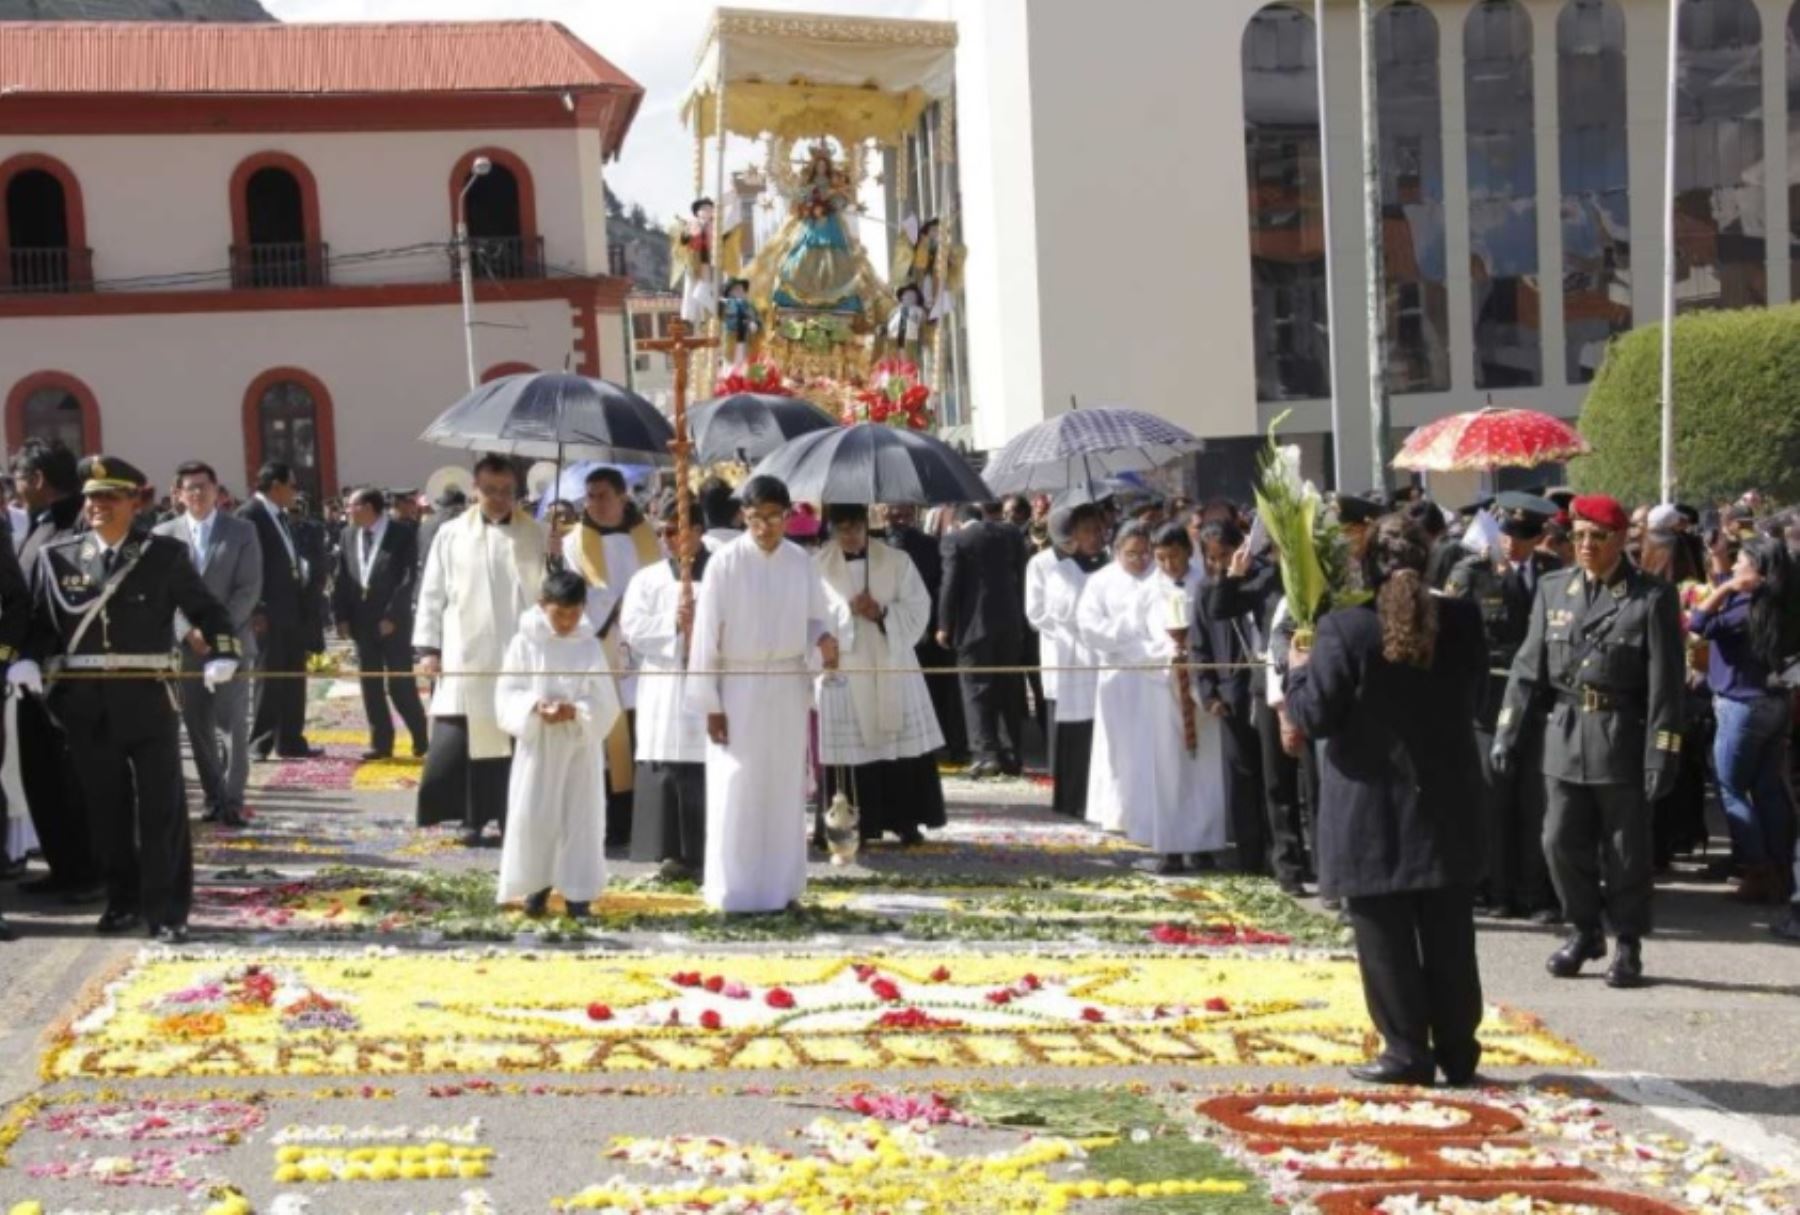 Con una participación multitudinaria de fieles católicos y las autoridades de Puno empezaron los actos celebratorios en honor a la “octava” de la festividad de la Virgen de la Candelaria, en el que destaca la participación de los conjuntos de trajes de luces.